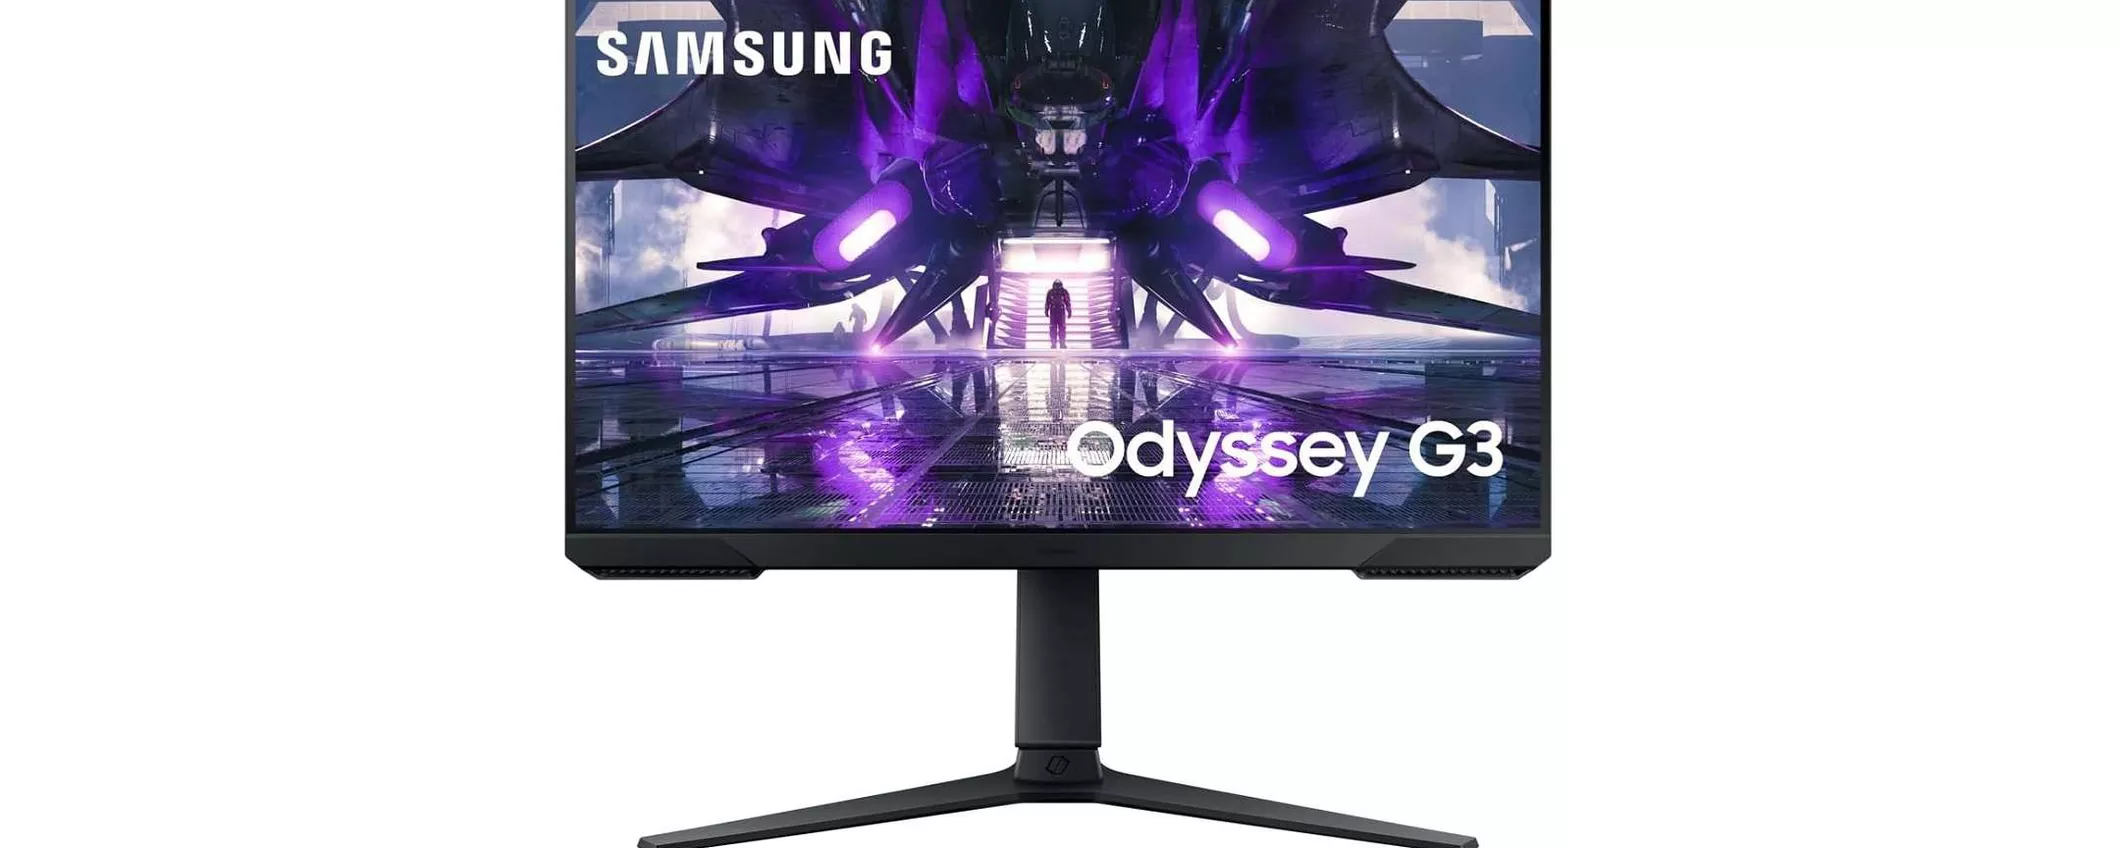 Questo monitor da gaming Samsung da 165 Hz è in offerta a 149€ su Amazon